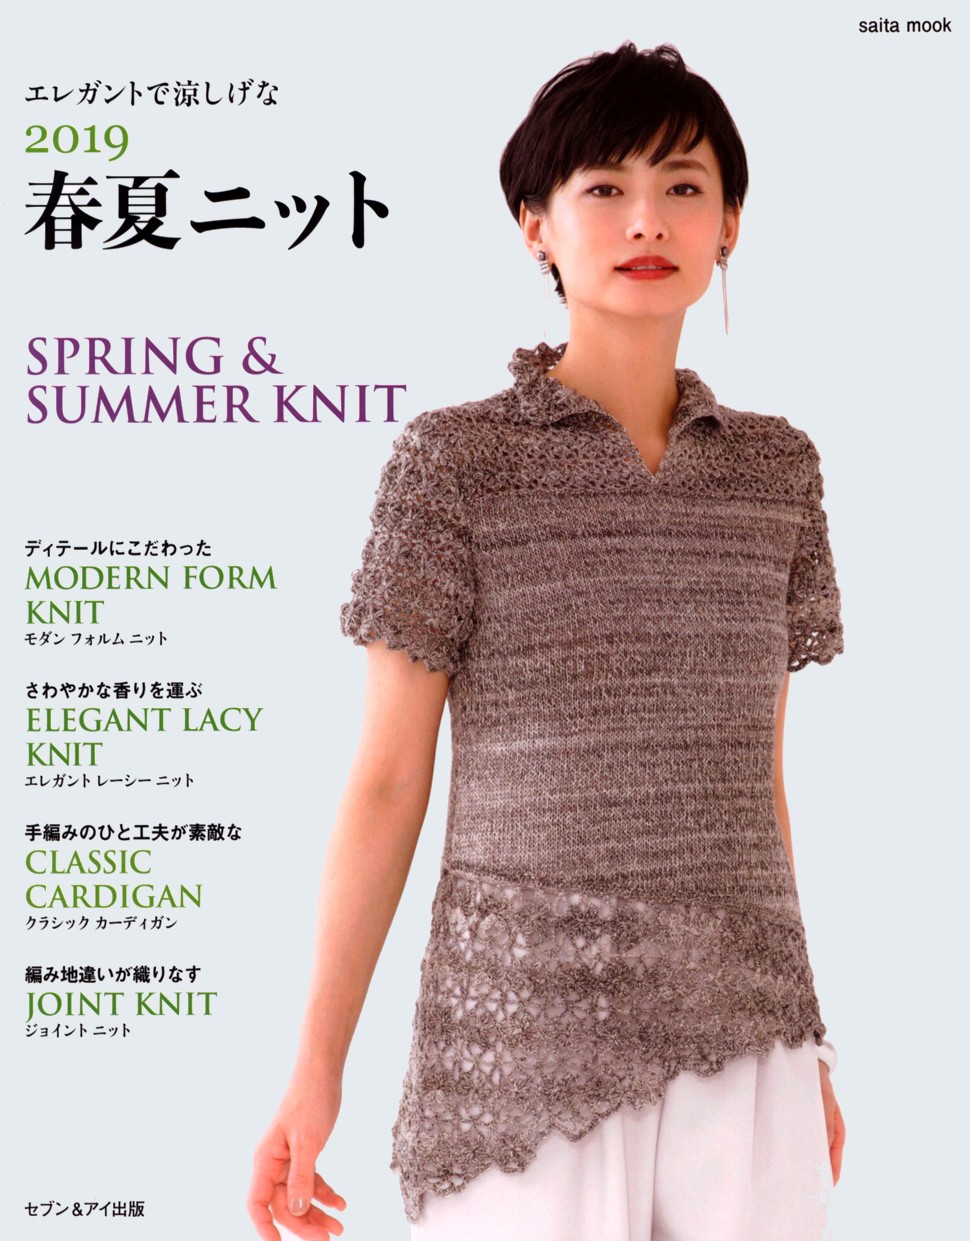 Saita Mook - Spring & Summer Knit 2019 (2)